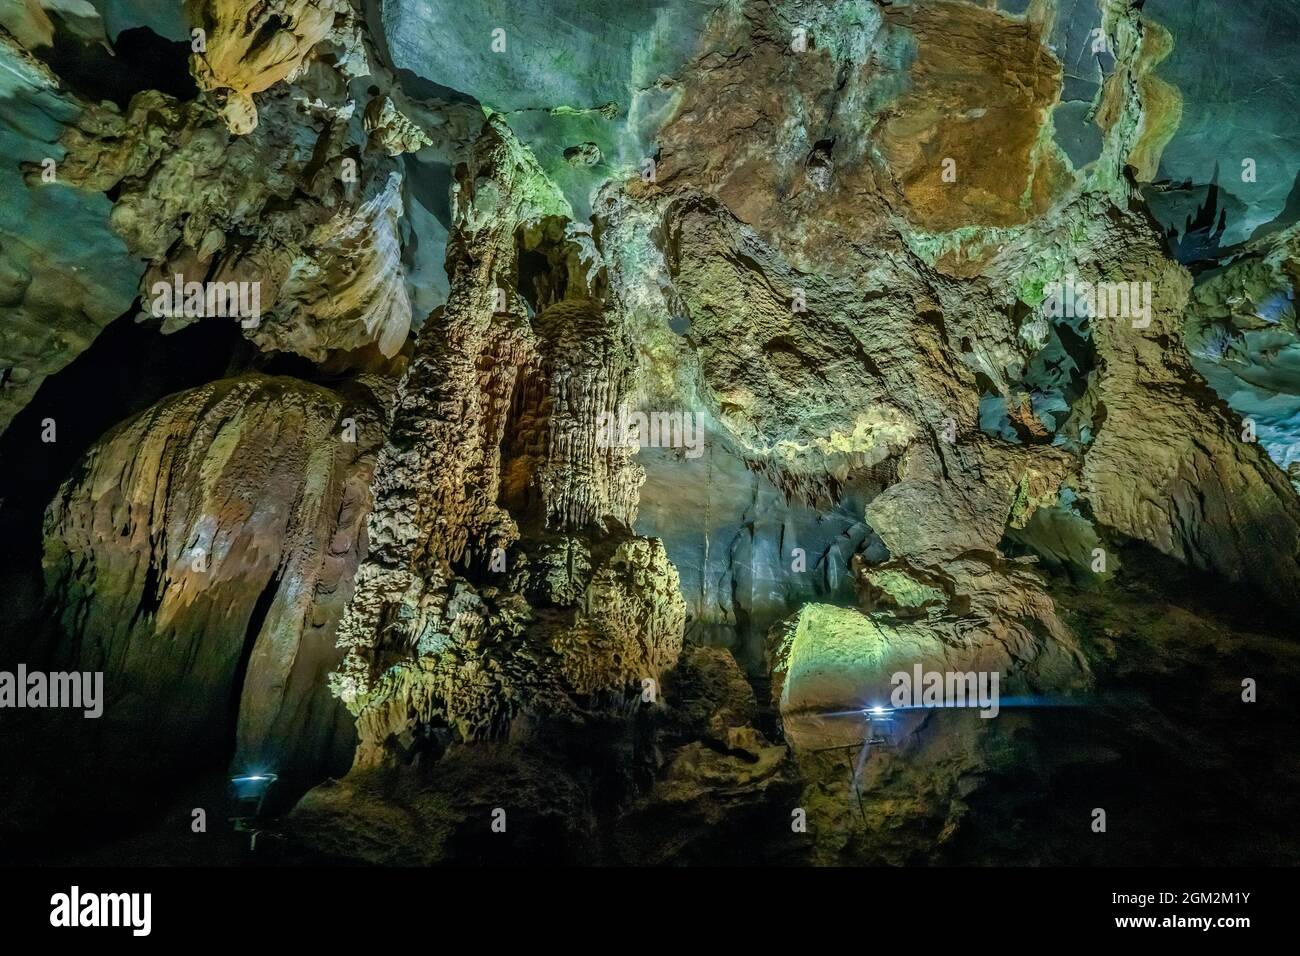 Grotte de Phong Nha, Quang Binh, Vietnam Banque D'Images